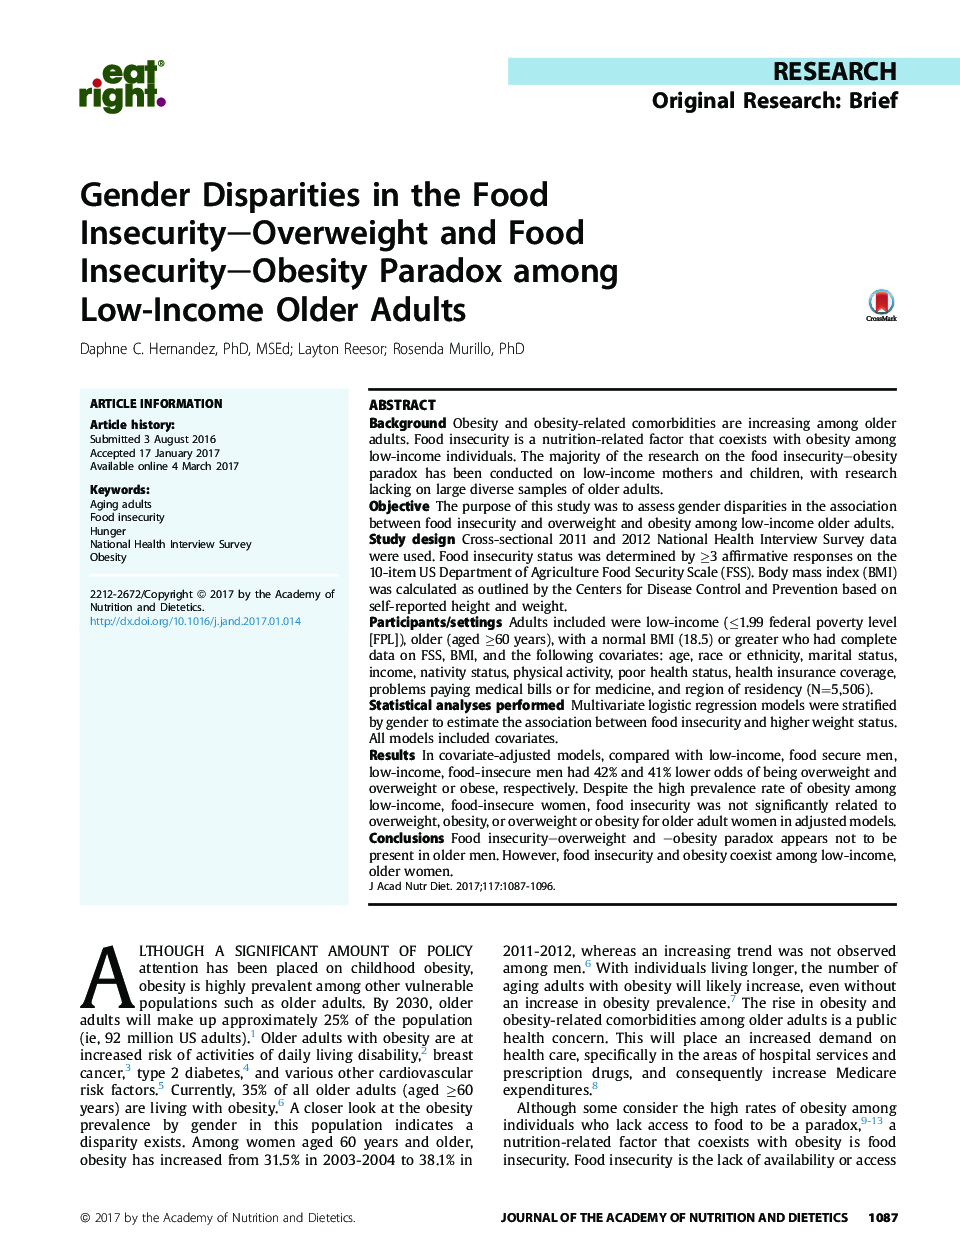 اختلافات جنسیتی در ناامنی غذایی - اضافه وزن و ناامنی غذایی - چاقی پارادوکس در میان بزرگسالان با درآمد پایین 